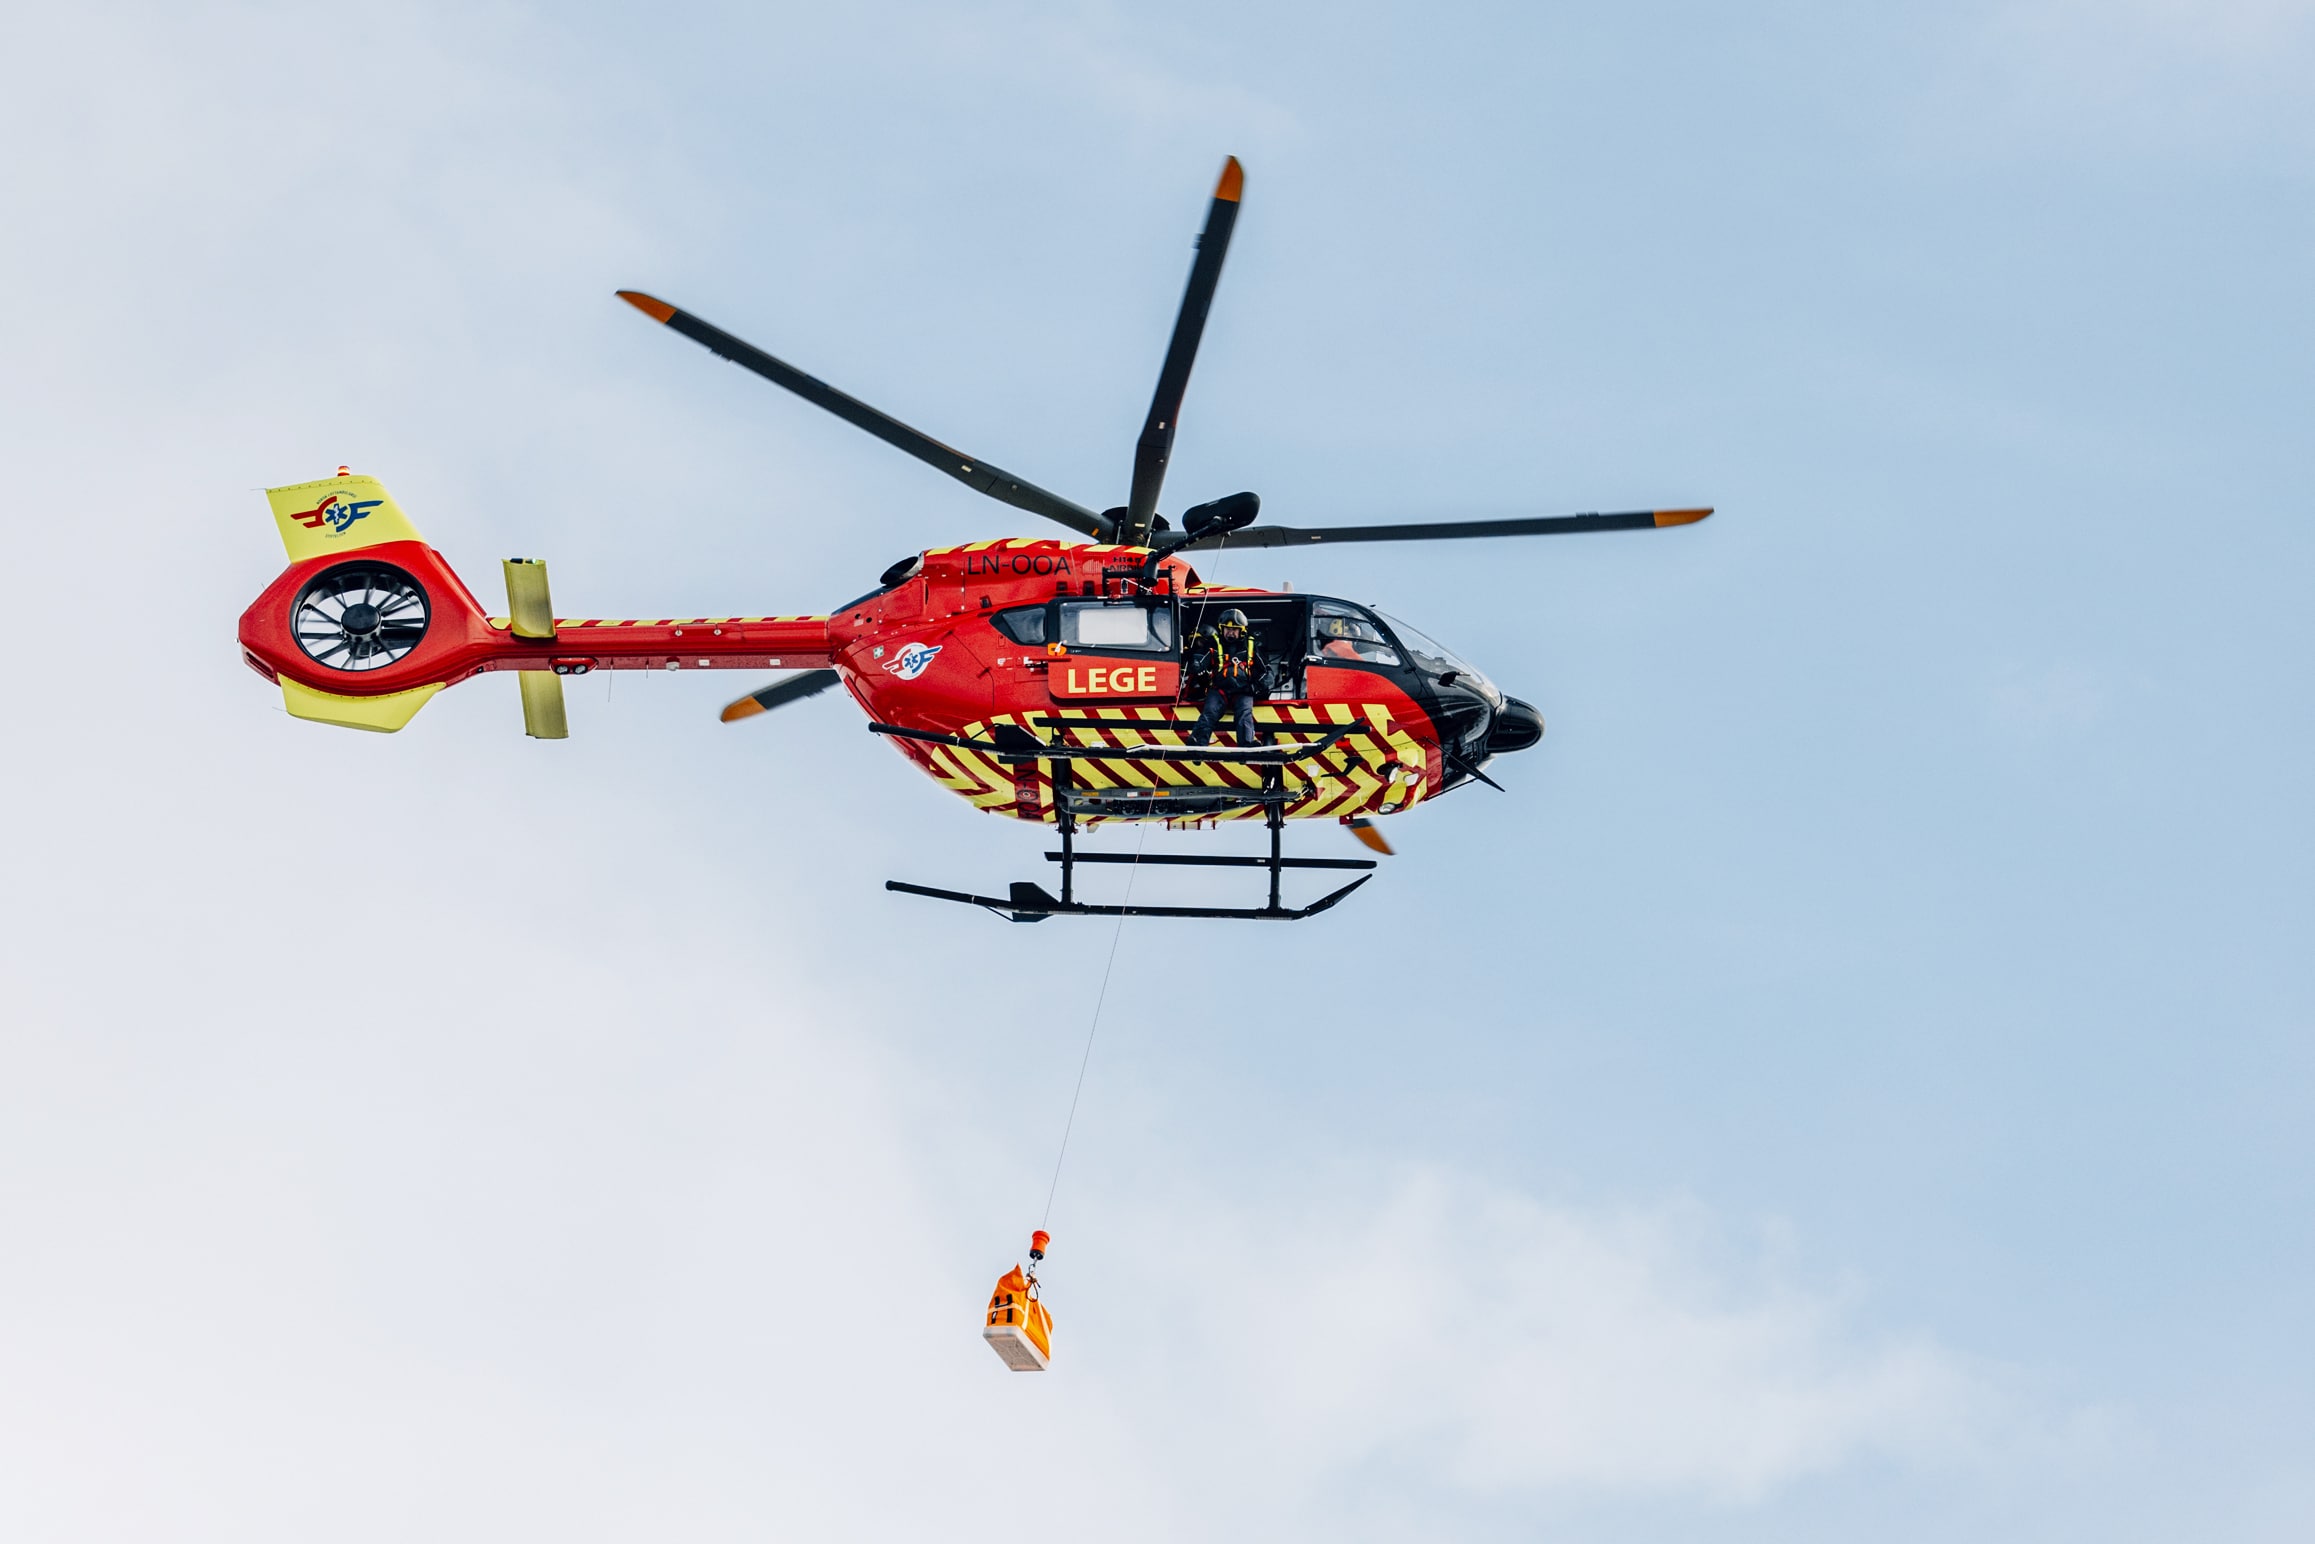 Stiftelsen Norsk Luftambulanse tester heis i helikopteret, her med Utviklingshelikopteret på Eggemoen